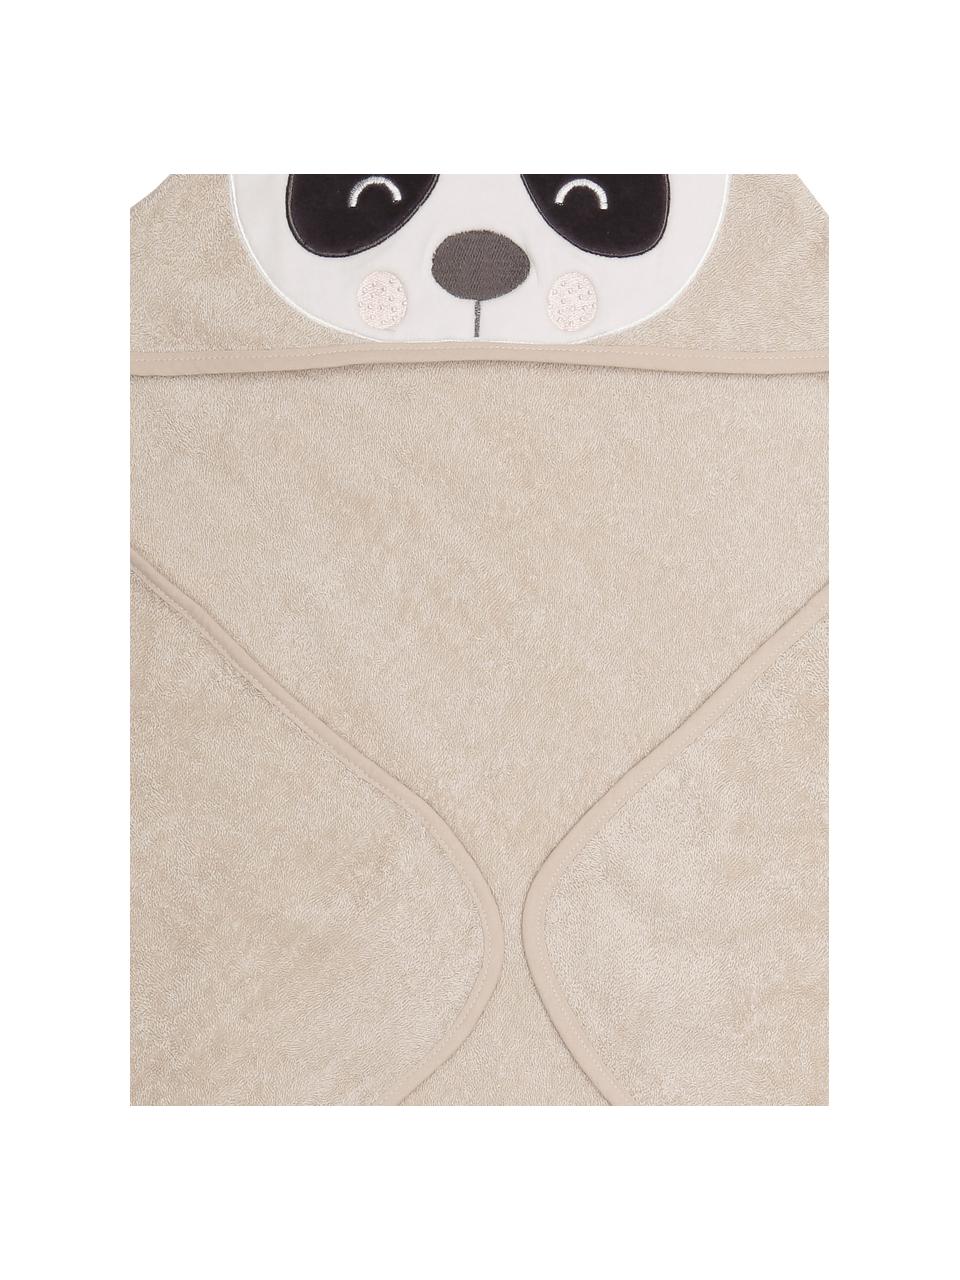 Dětský ručník z organické bavlny Panda Penny, Béžová, bílá, tmavě šedá